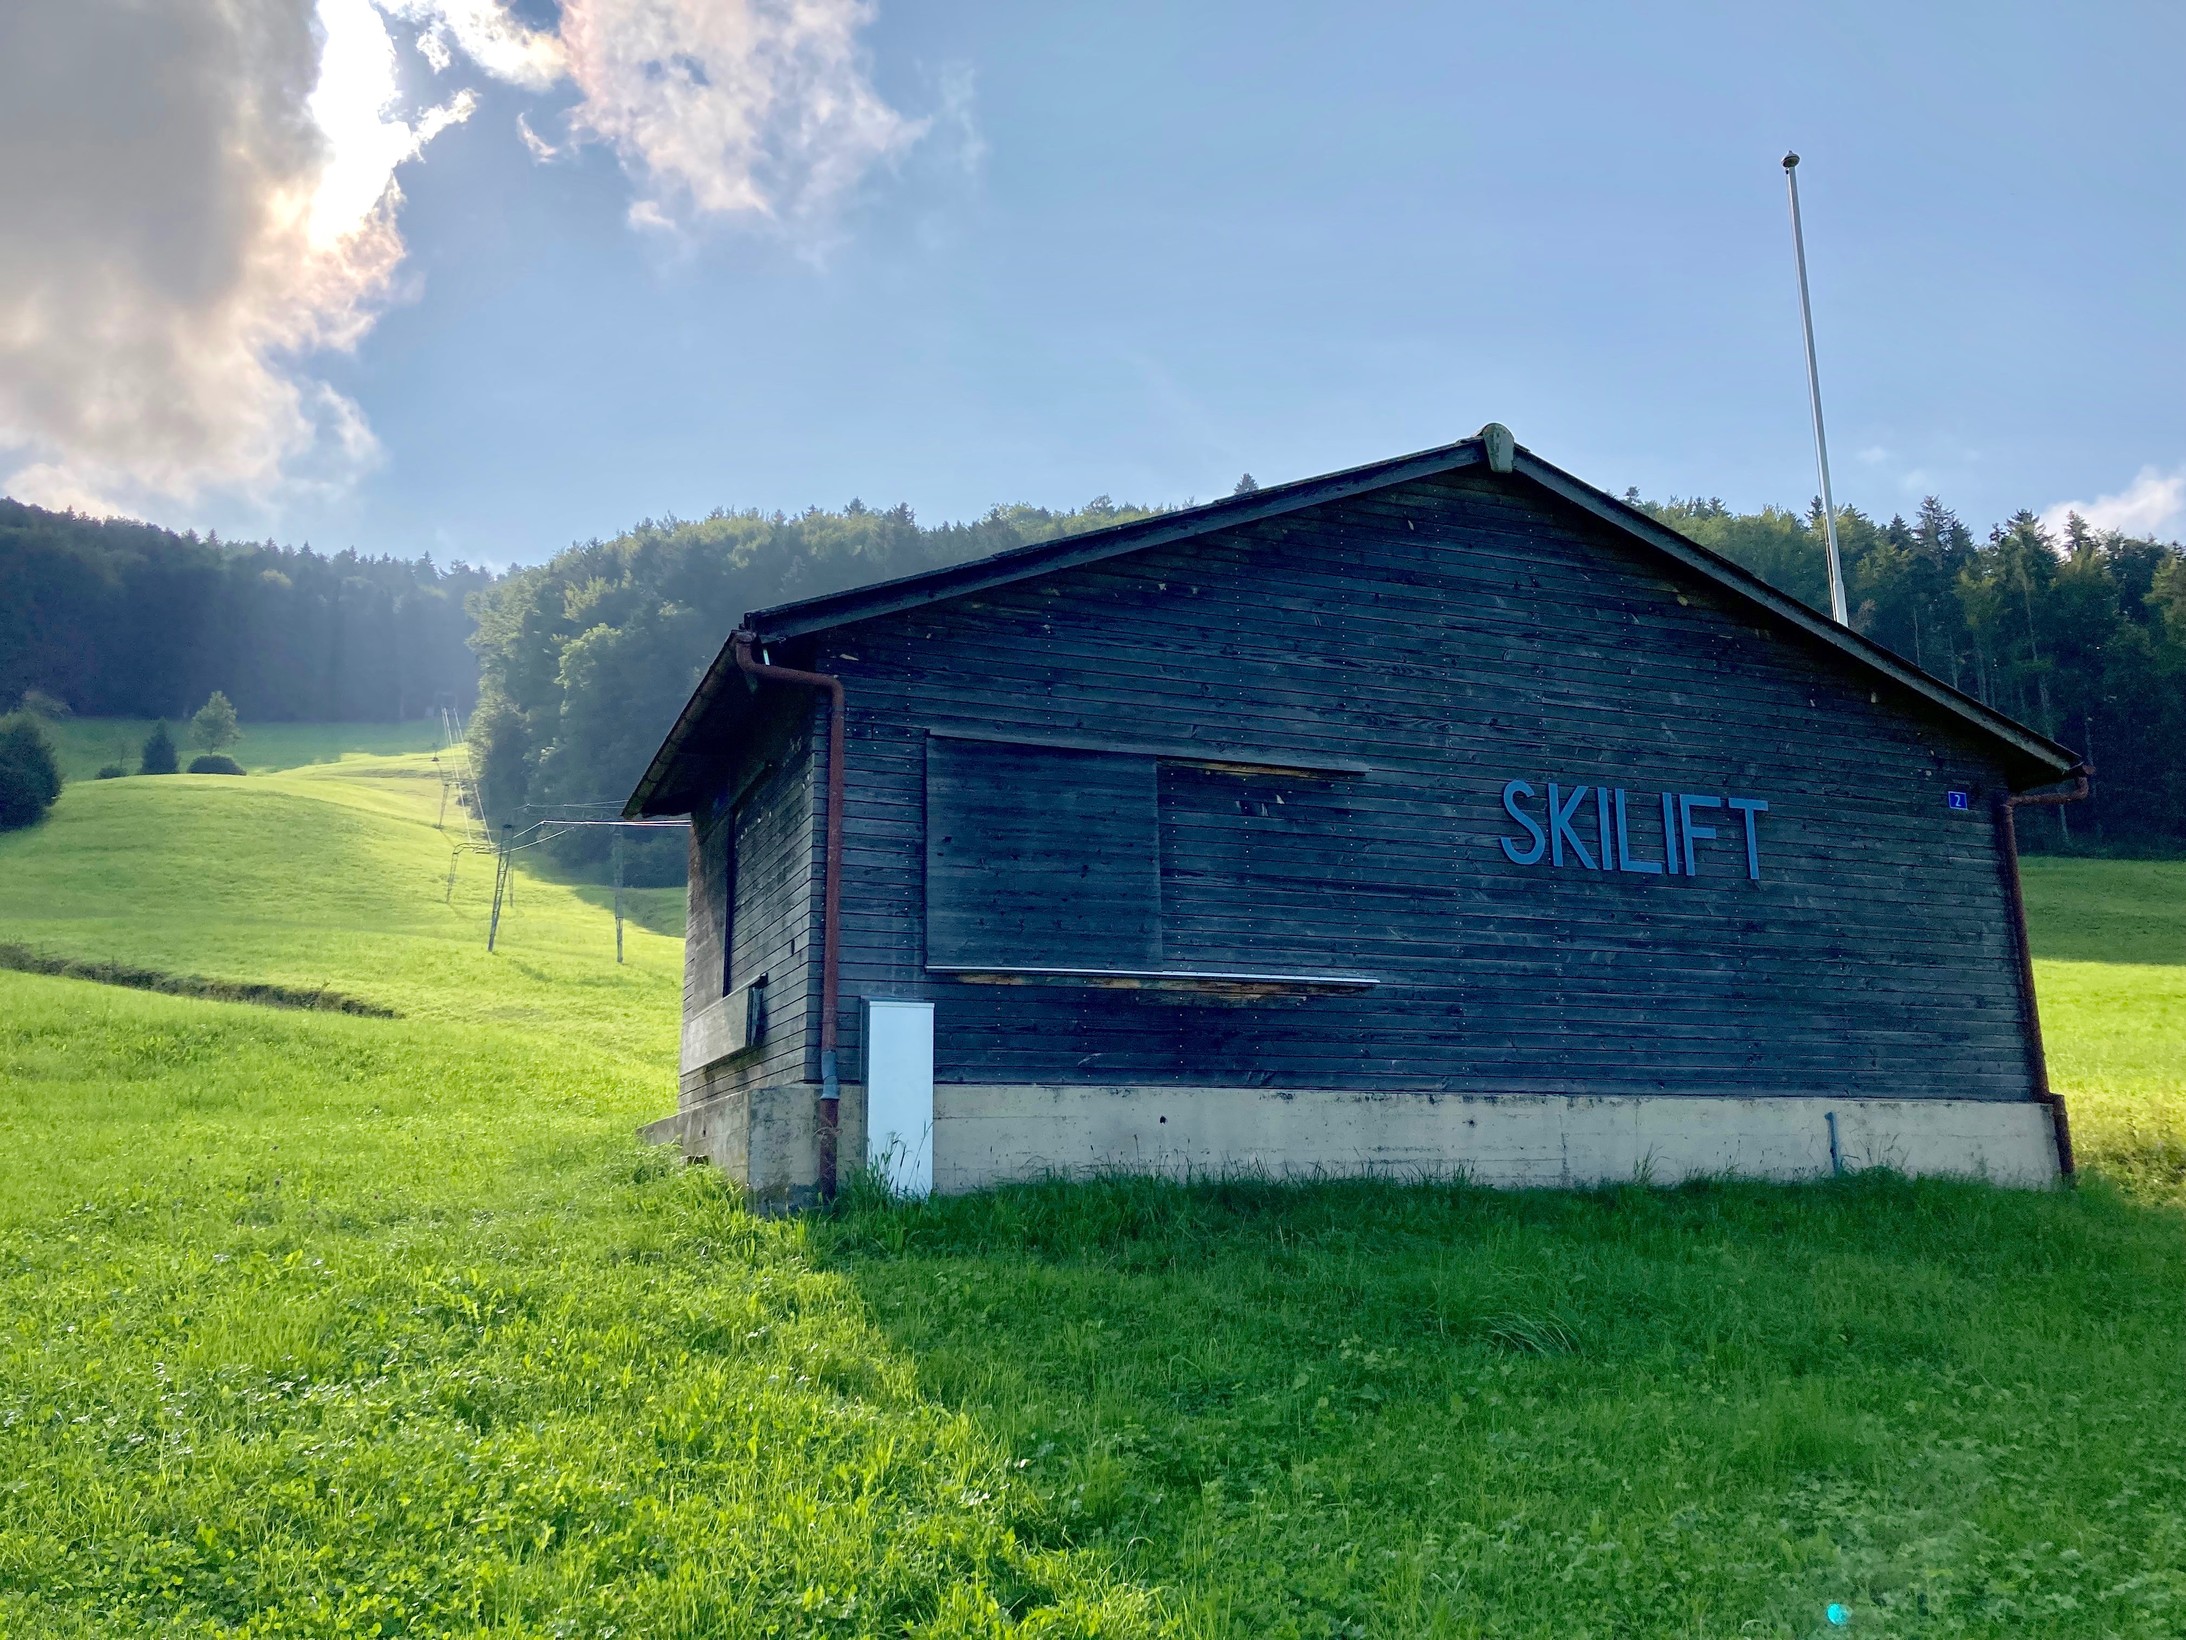 Anlage der Skiliftgenossenschaft Steig-Bäretswil